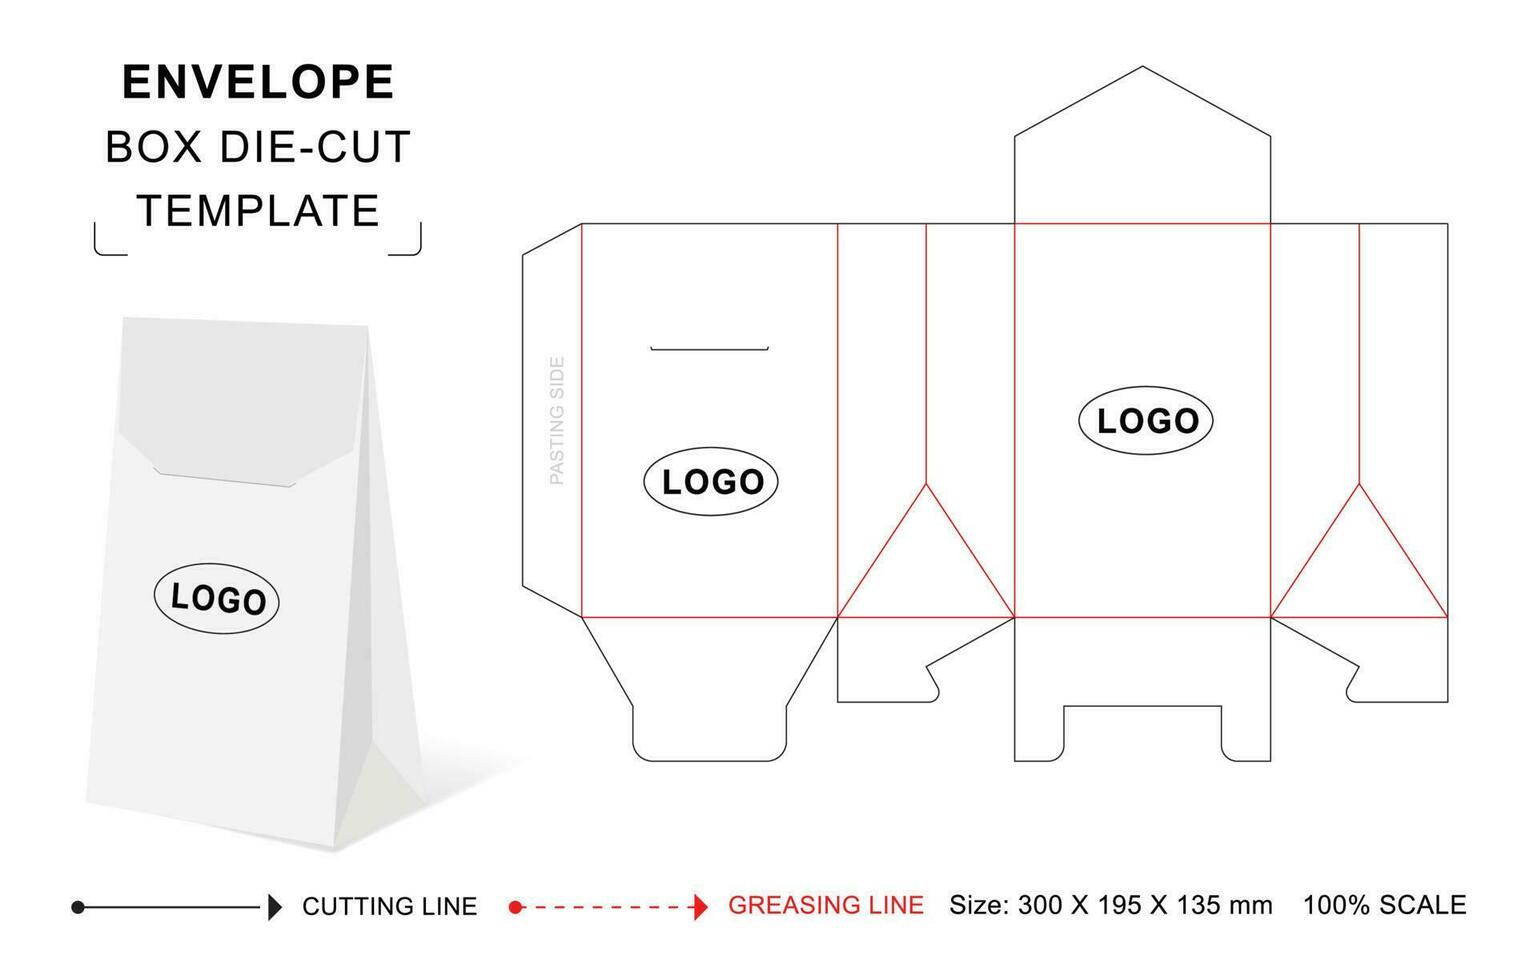 Envelope box die cut template vector